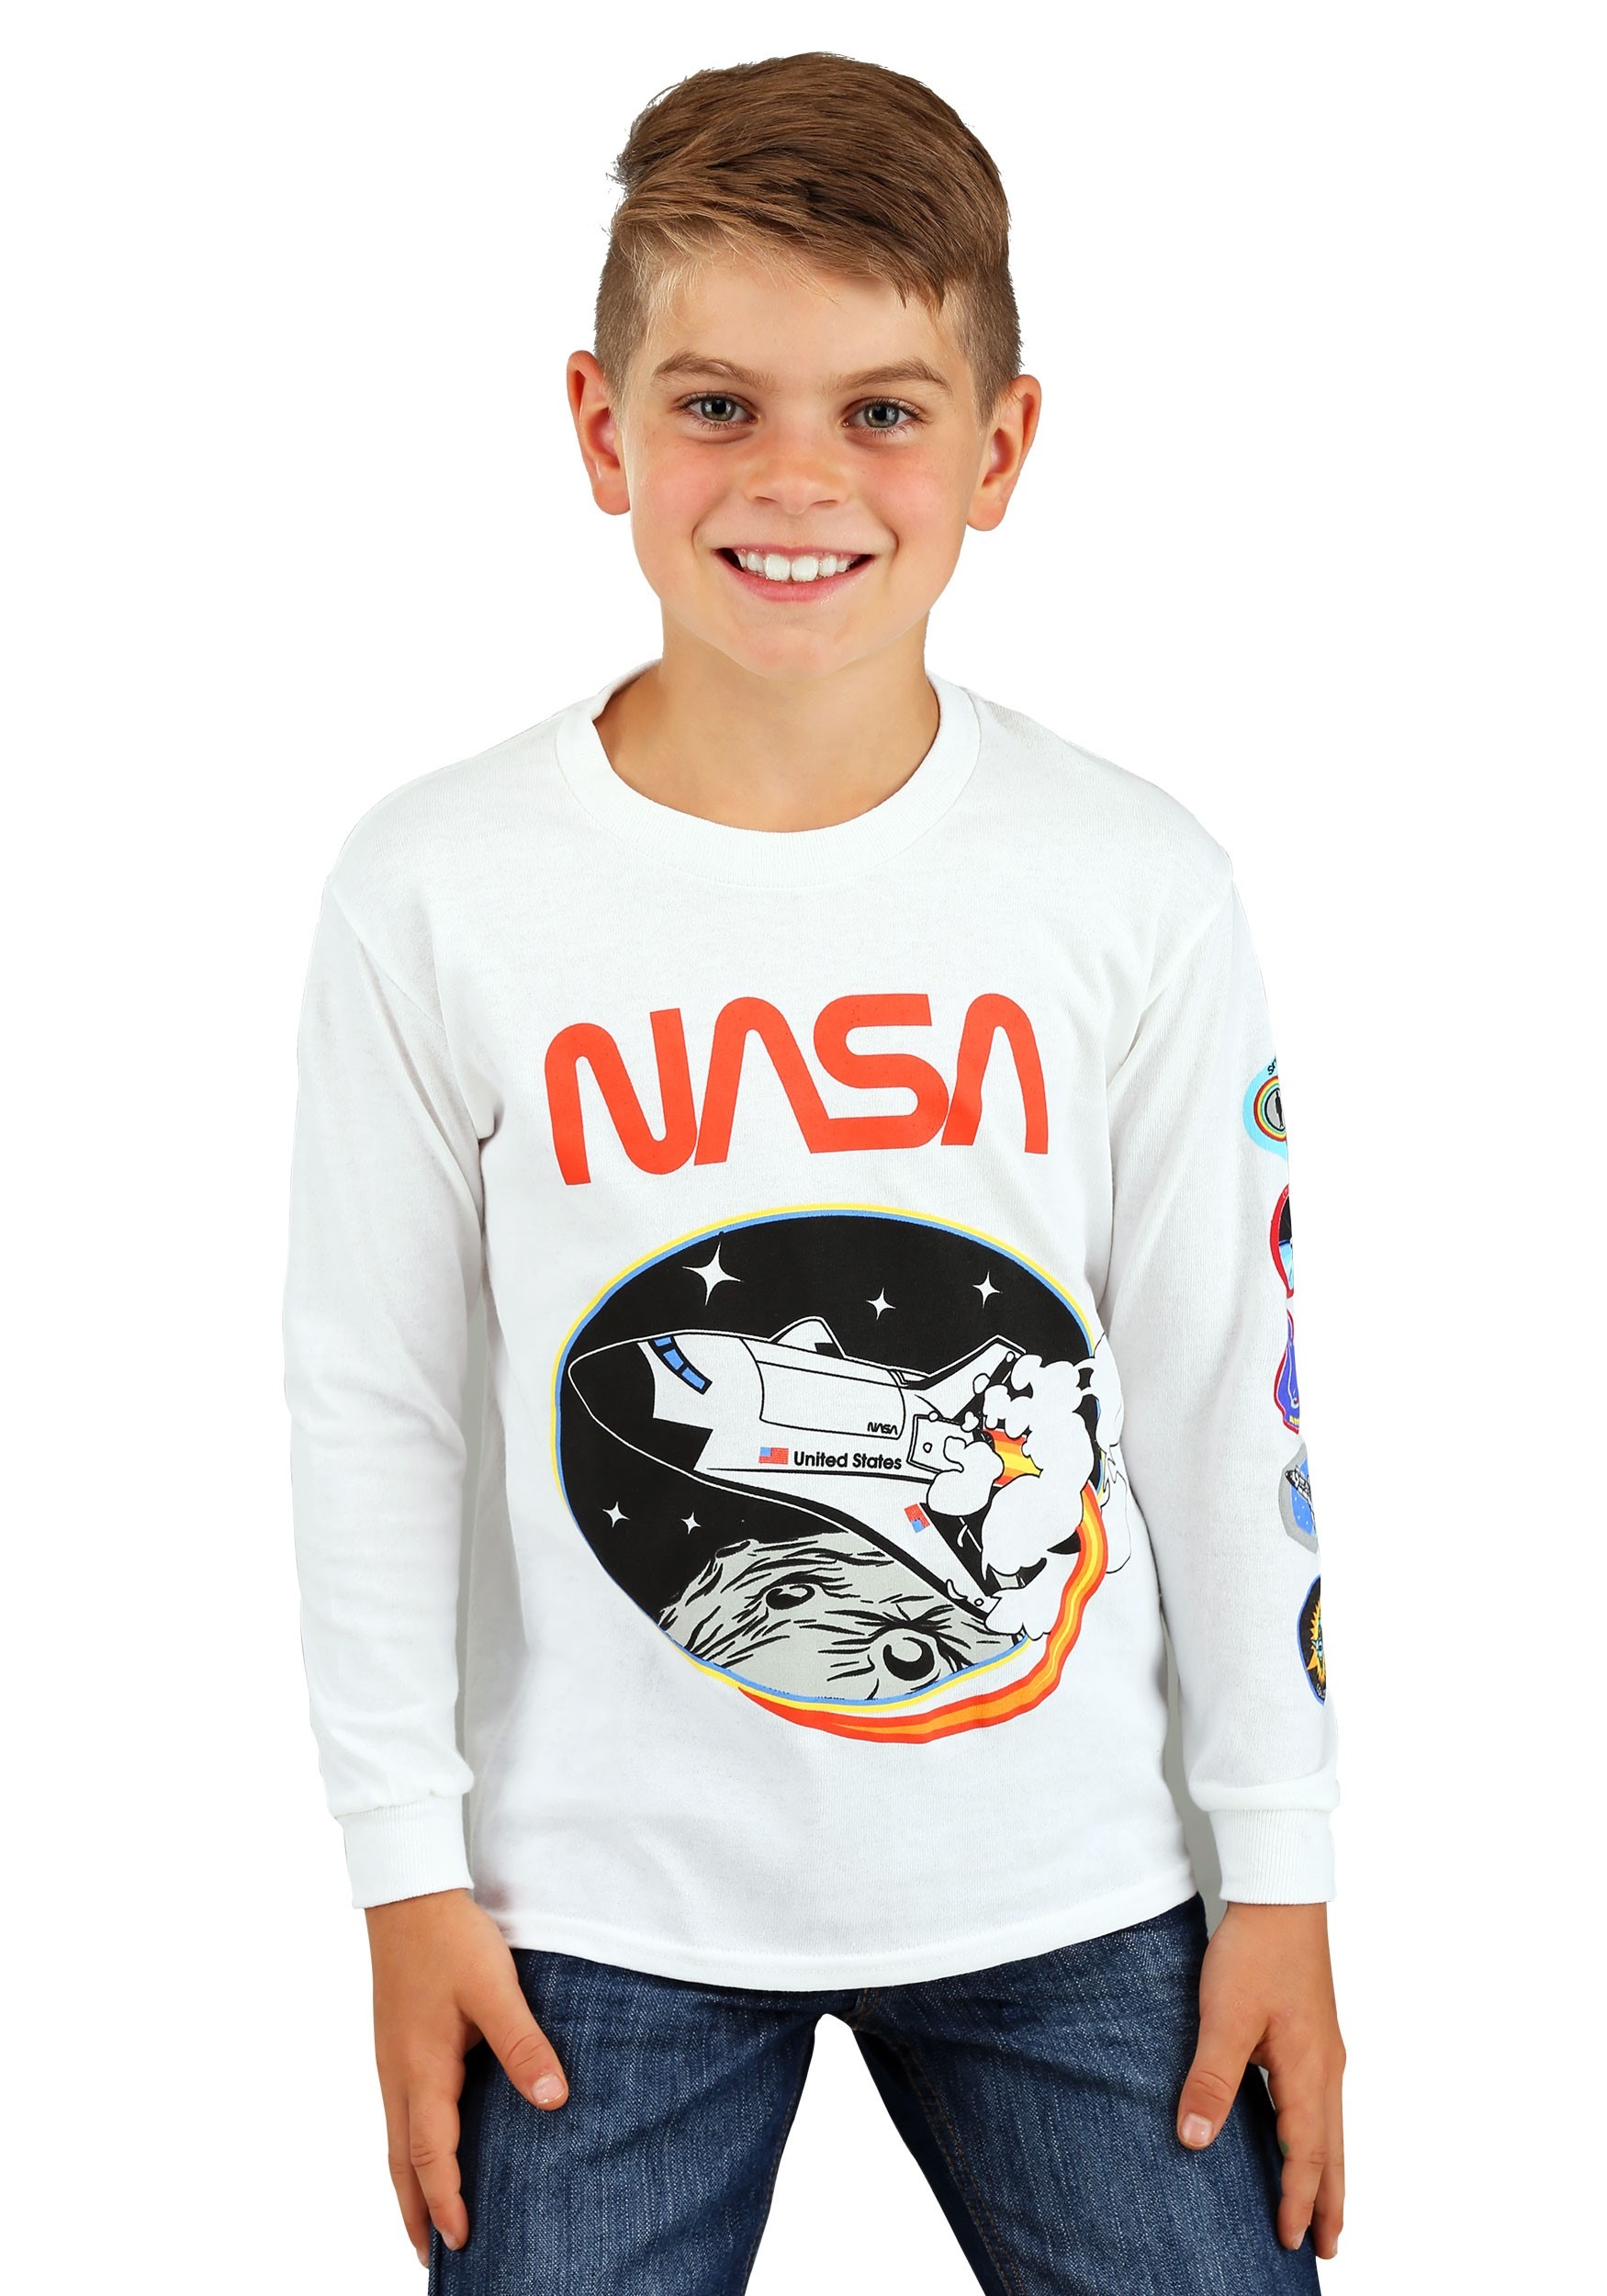 NASA Long Sleeve Shirt